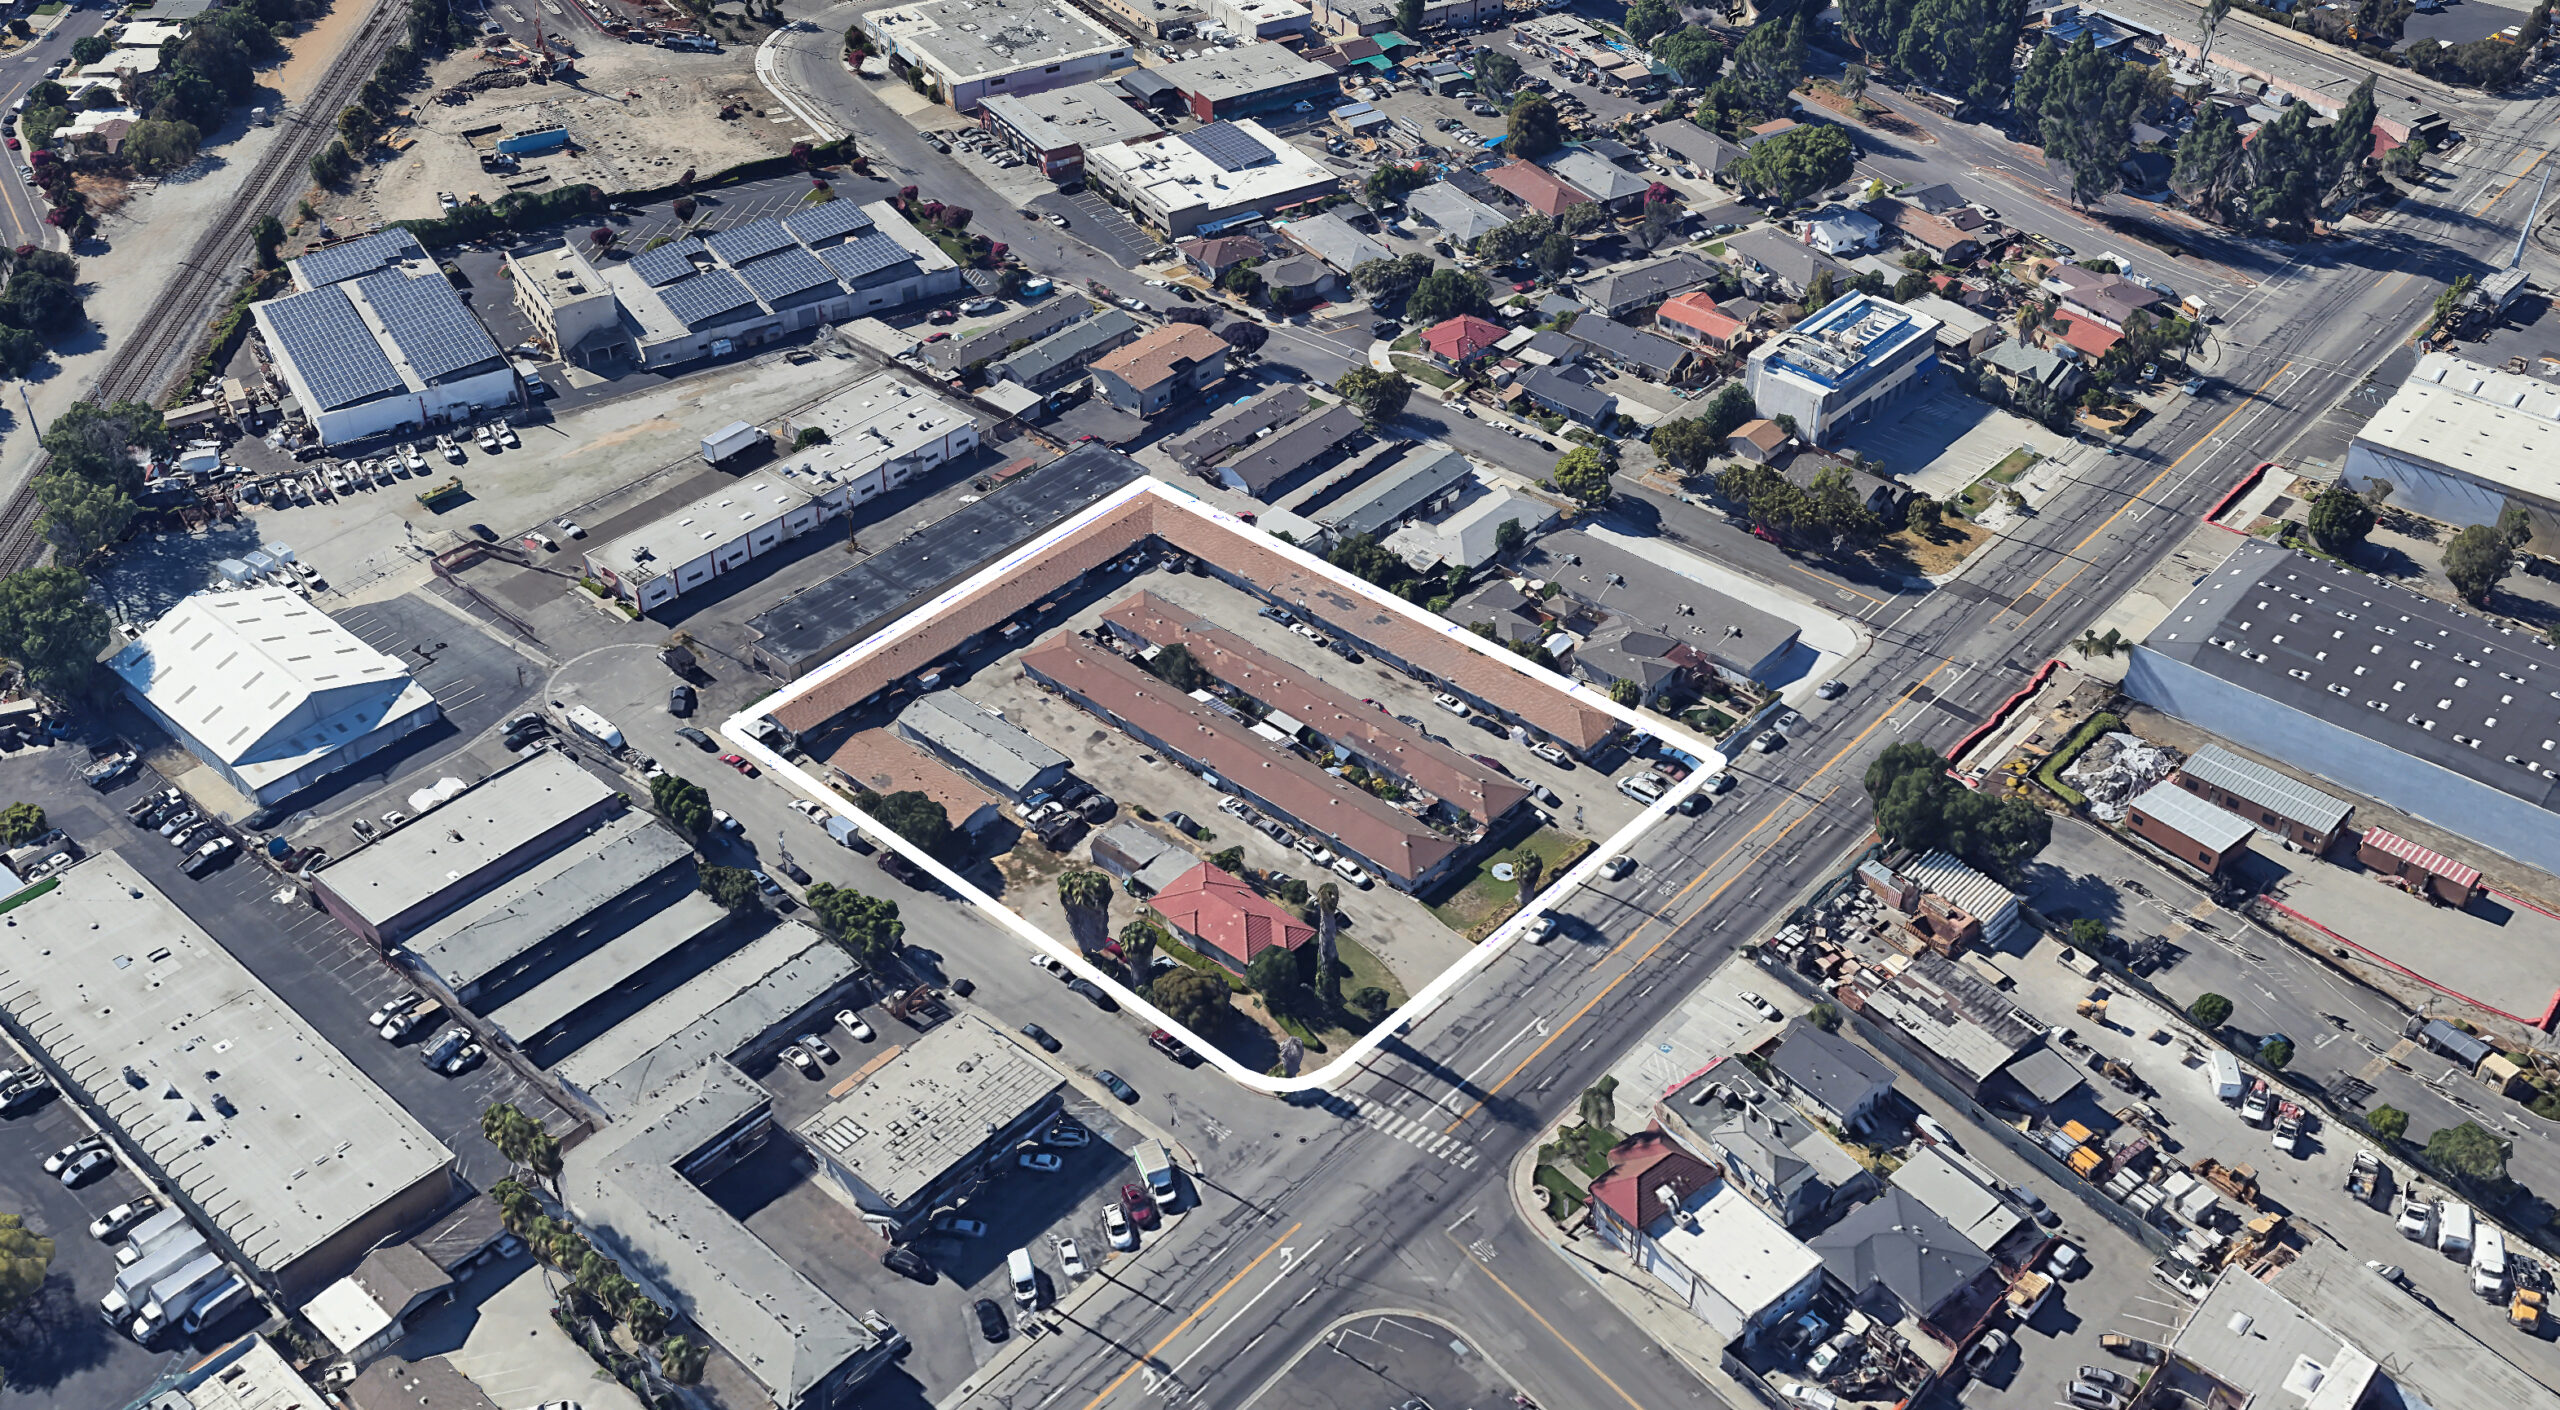 2050 Lafayette Street, image via Google Satellite